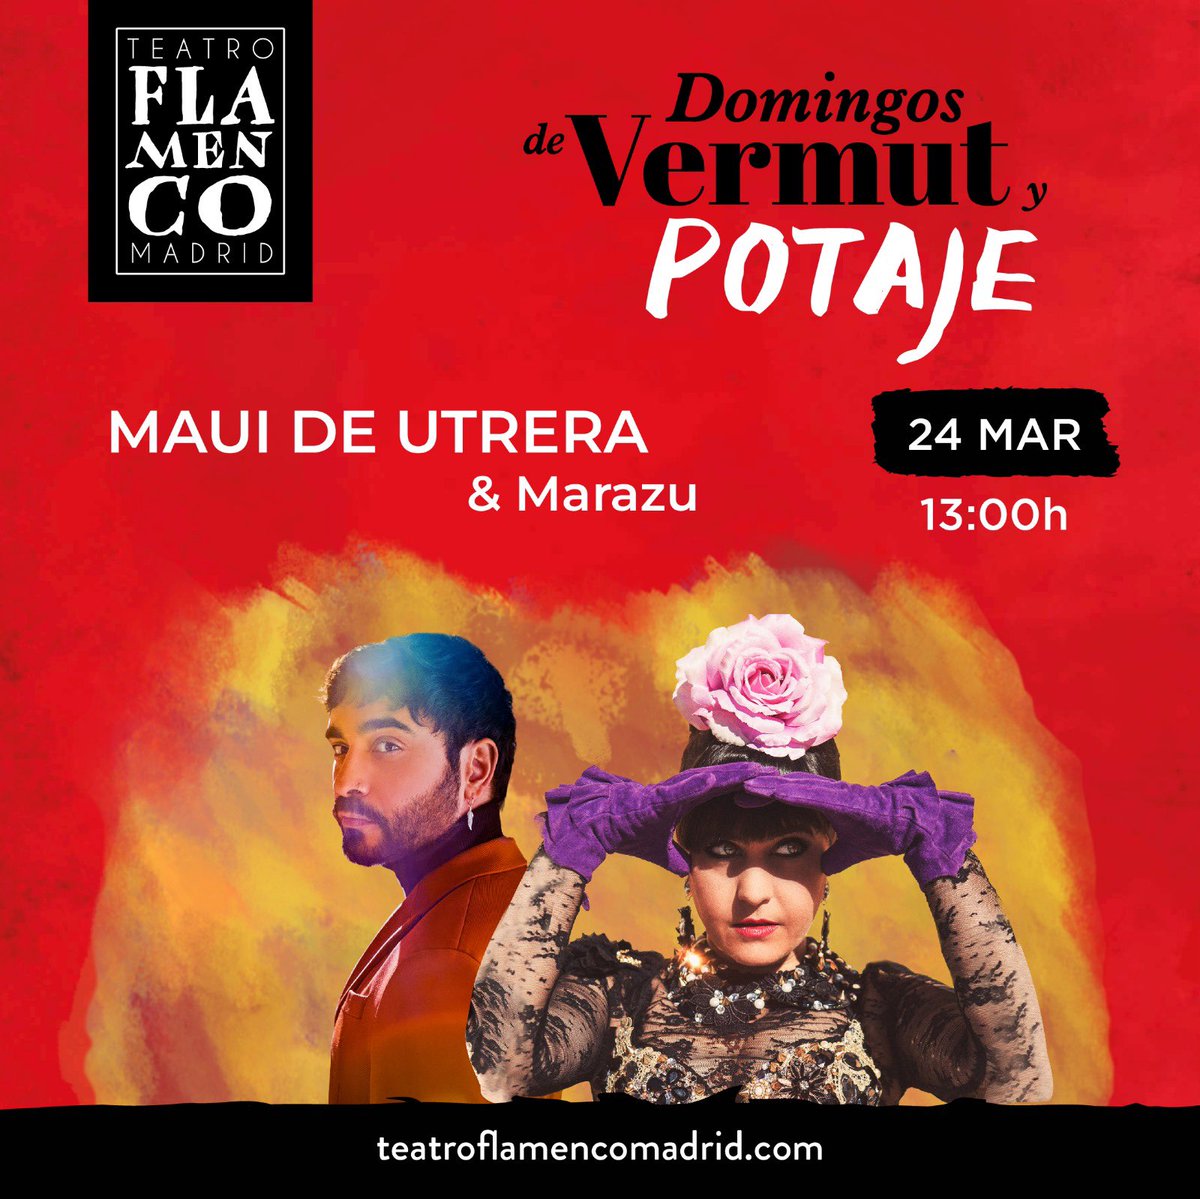 El mejor plan del domingo en Madrid: VERMUT Y POTAJE CON @MauideUtrera y @marazu en @TeatroFlaMadrid Domingo 24, a las 13h. Empieza la cuenta atrás, entradas a la venta …ngosdevermut.teatroflamencomadrid.com